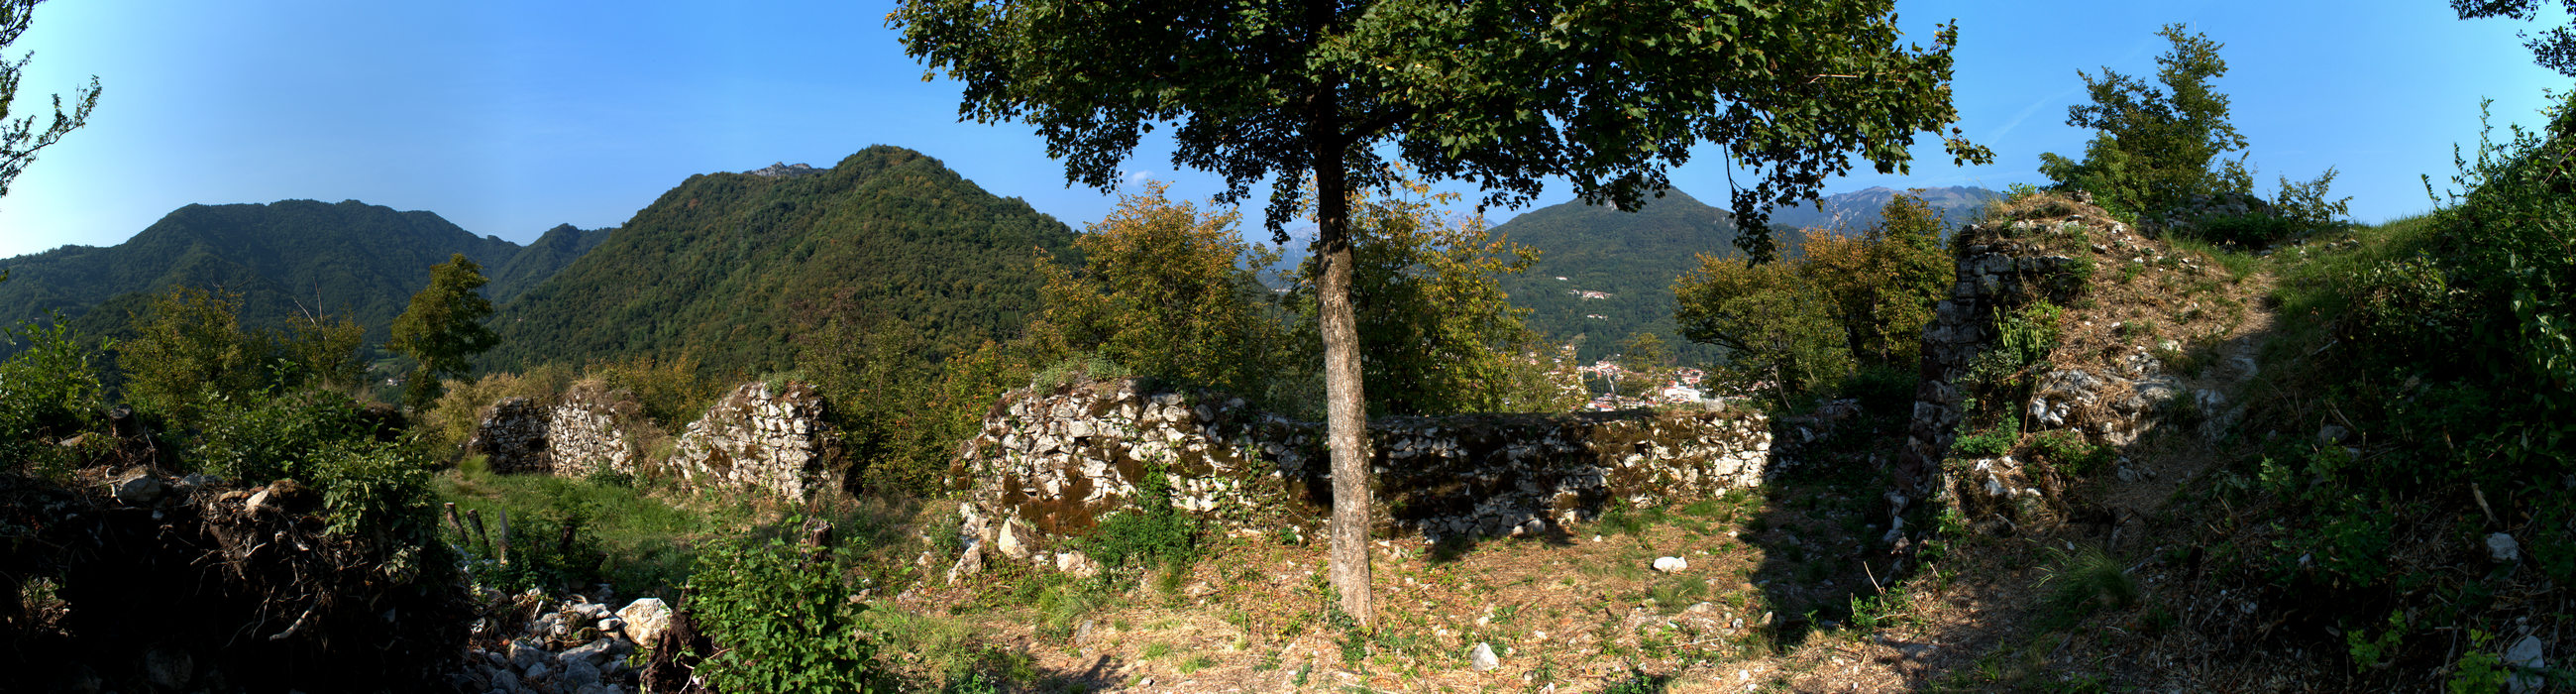 ruderi del castello di Pievebelvicino a Torrebelvicino, Val Leogra, Alto Vicentino